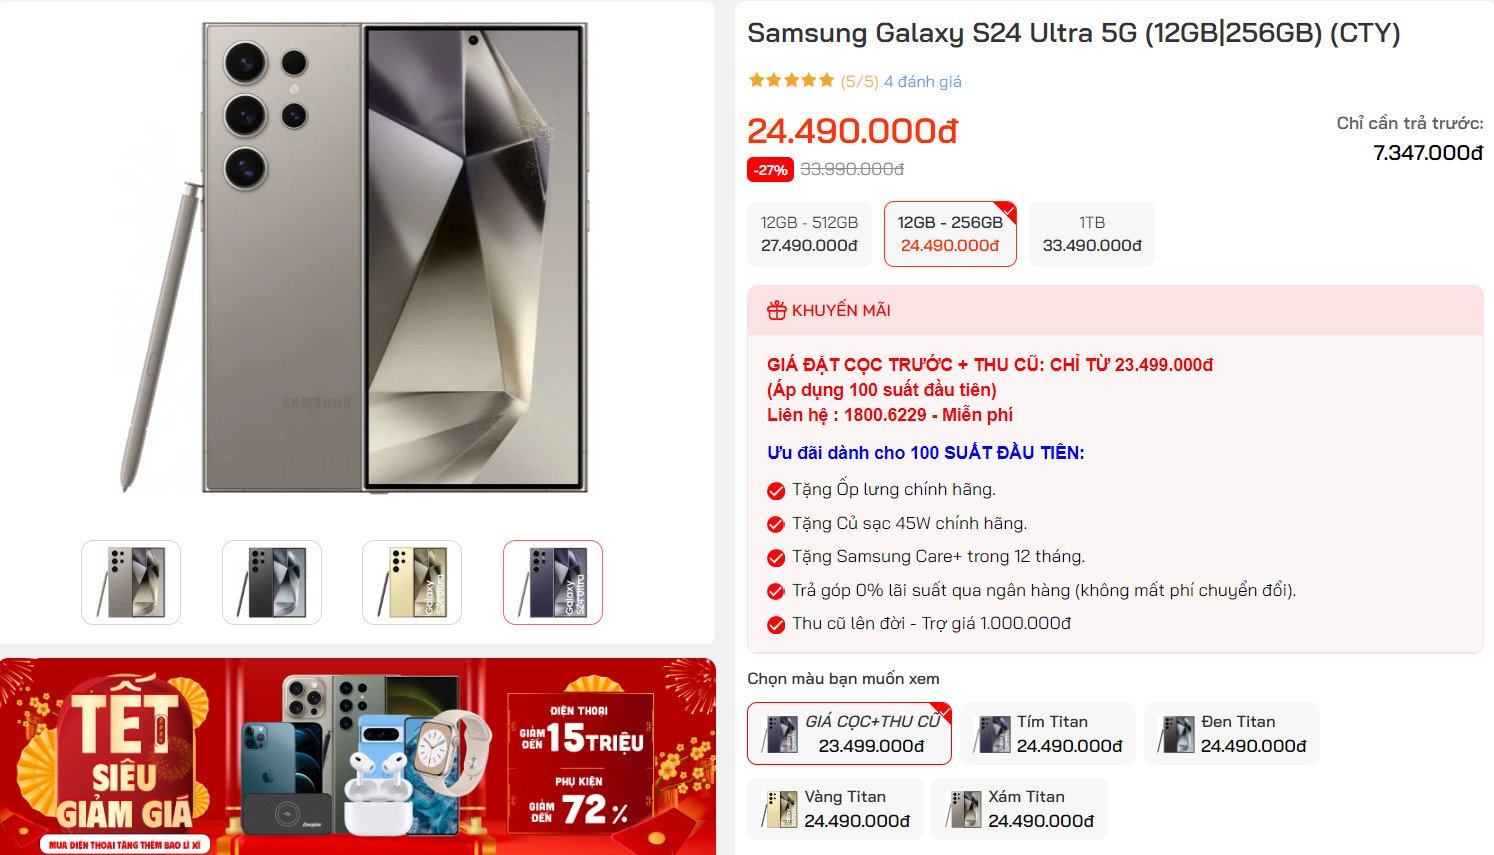 Lên đời Galaxy S24 Ultra chỉ từ 8.5 triệu đồng, sức mua tăng chóng mặt